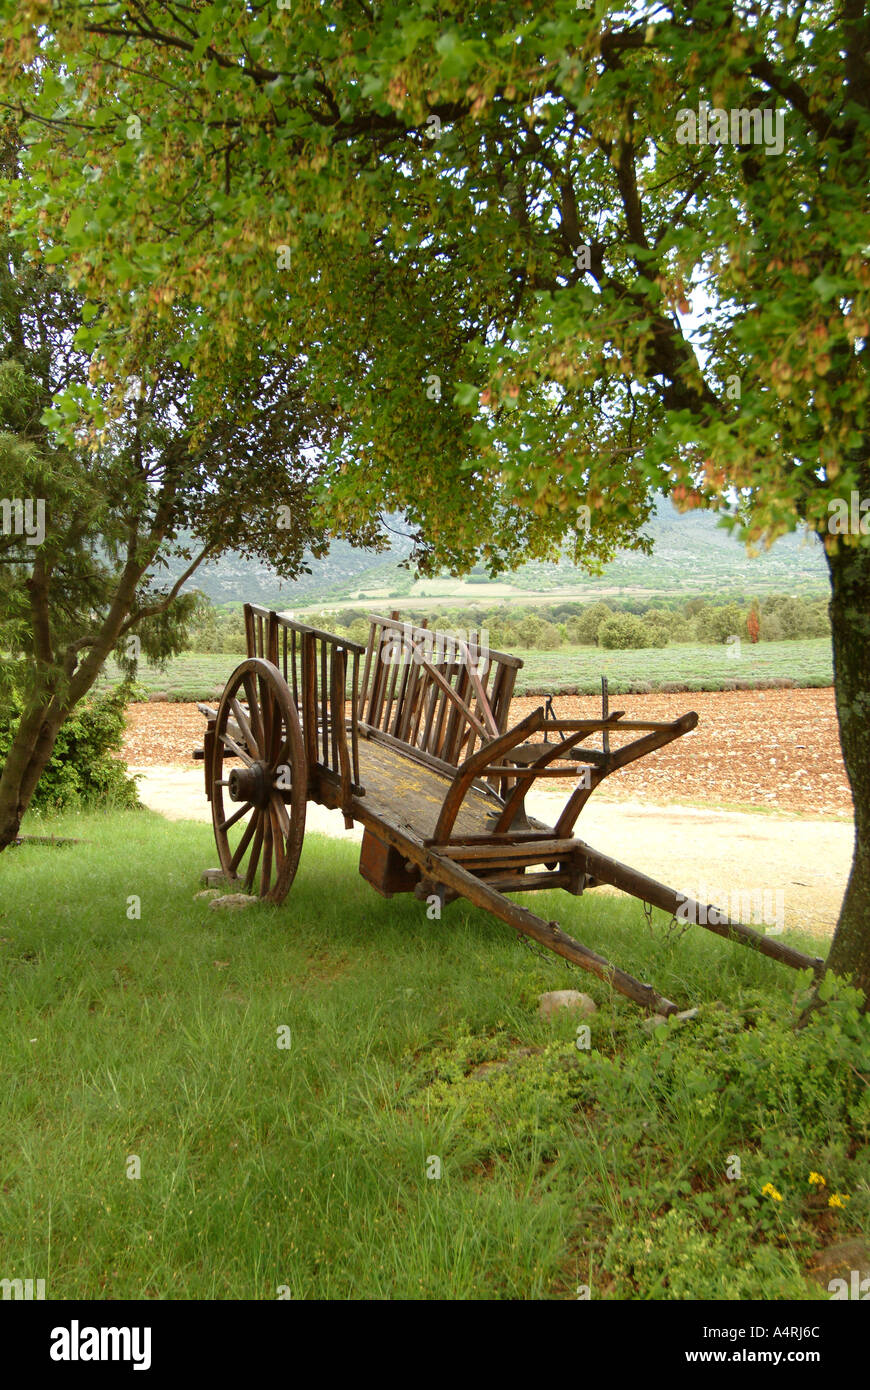 CartMBF 1583 rispettivamente Ardeche Valle del Rodano in Francia haycart Farm o charrette sulle colline dell'Ardeche Foto Stock